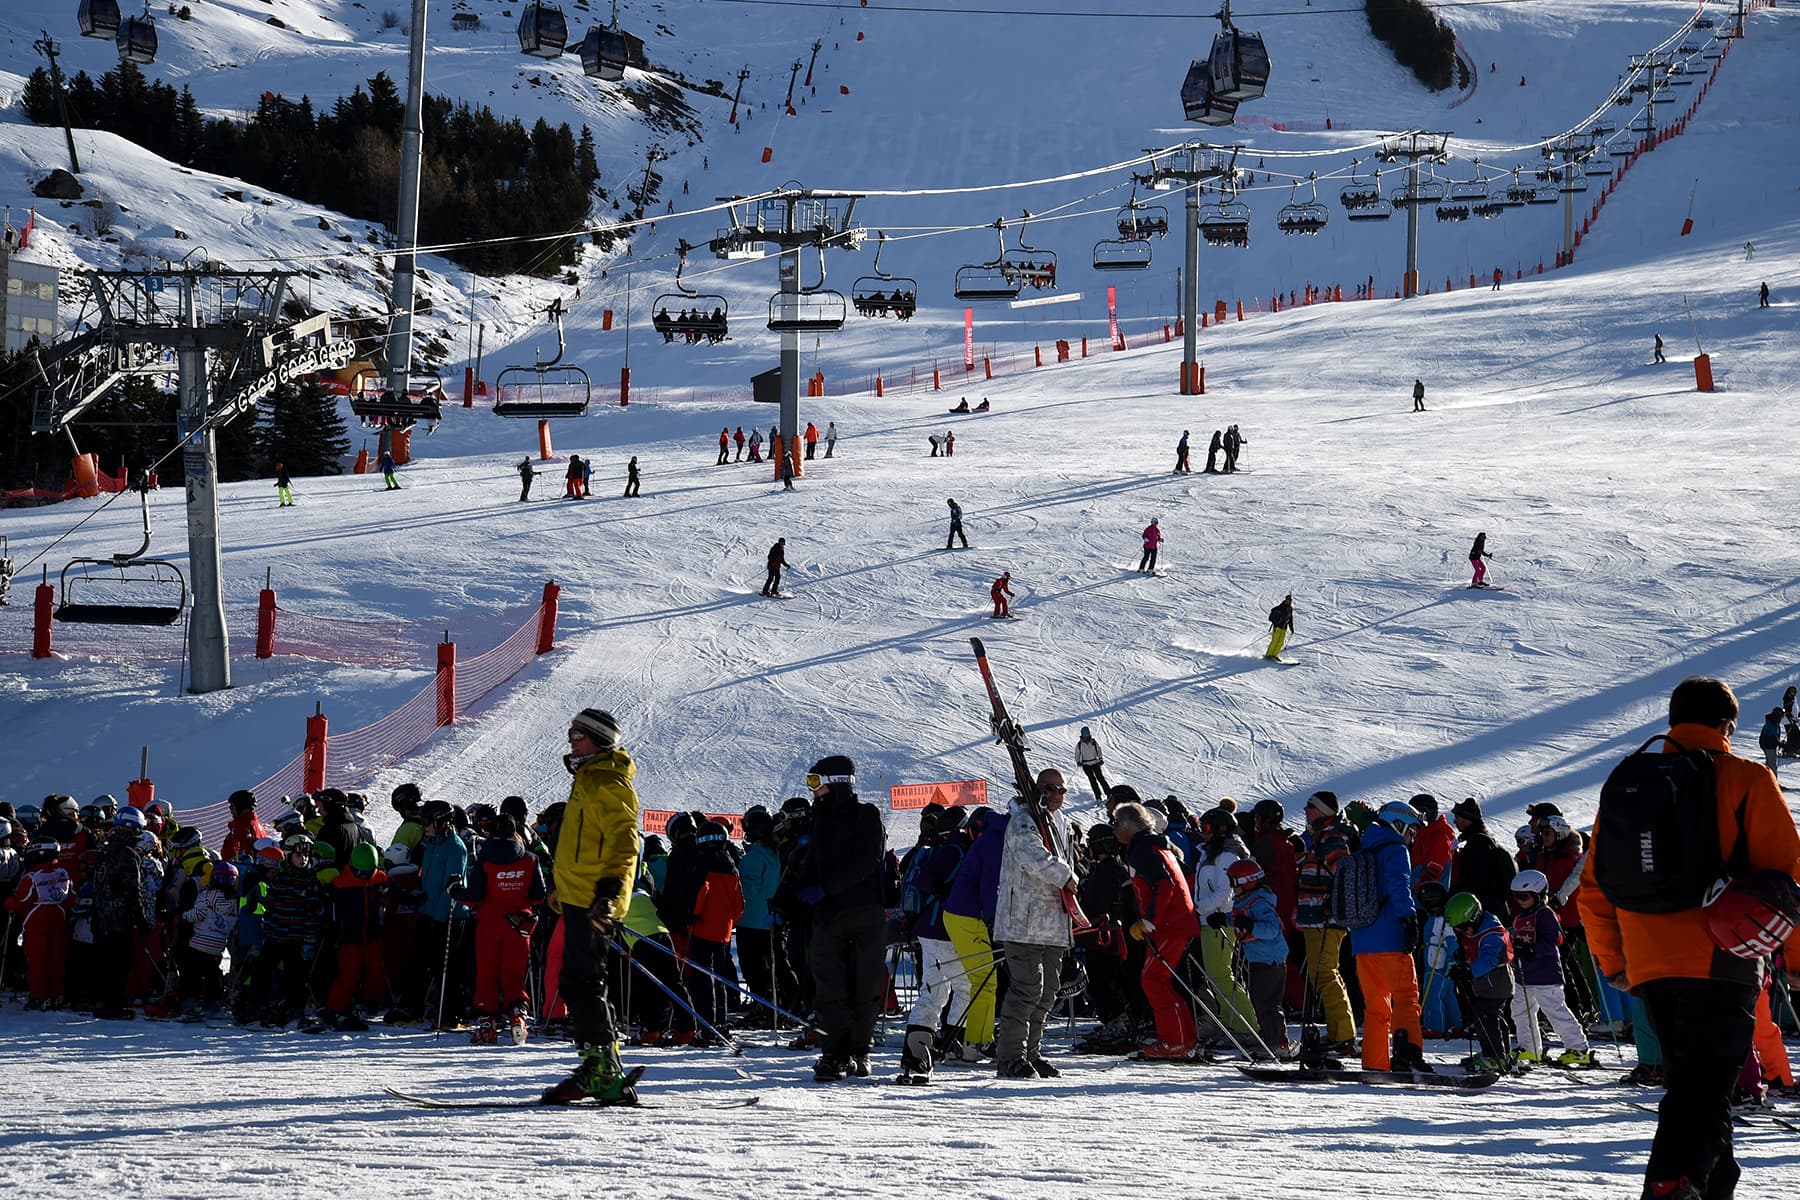 haute-savoie: la société de tony parker écartée pour reprendre l'exploitation d'une station de ski